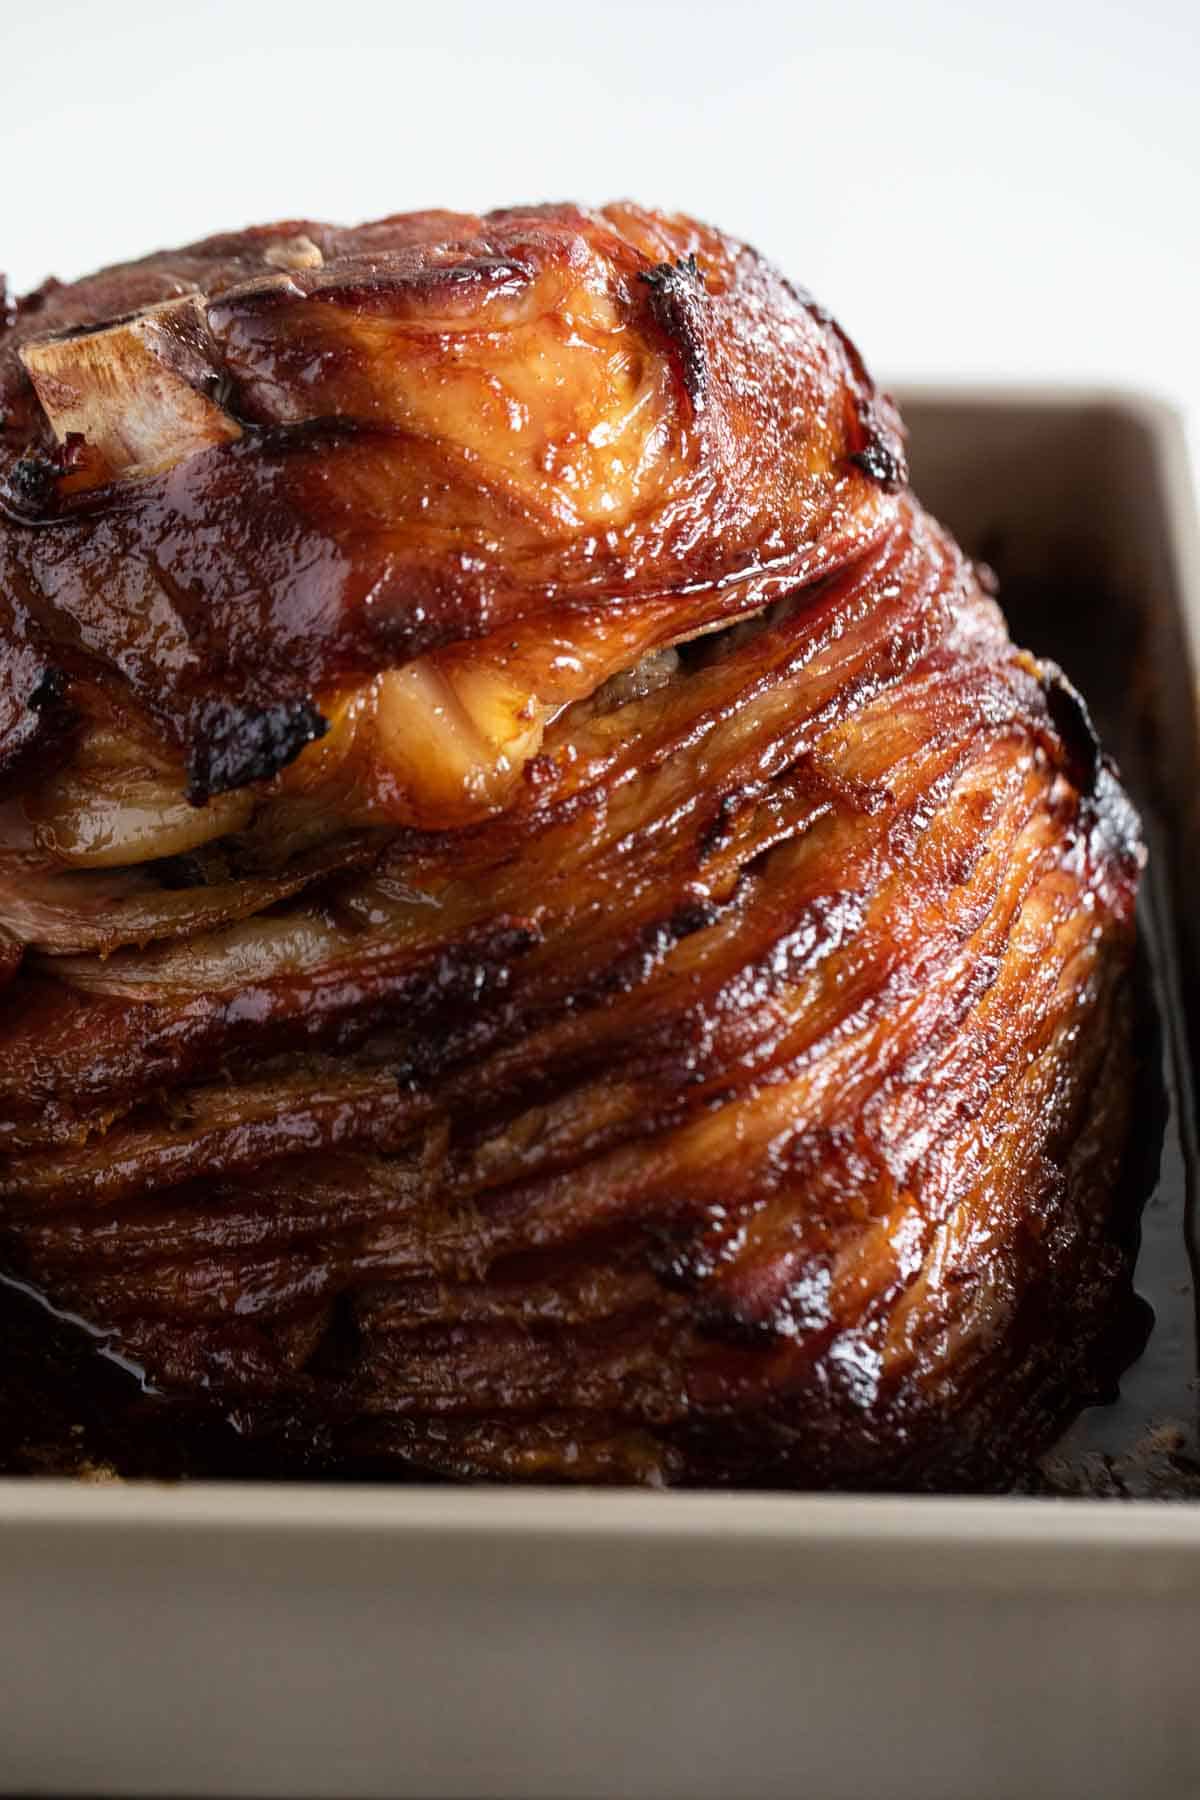 Full honey glazed ham in a pan.